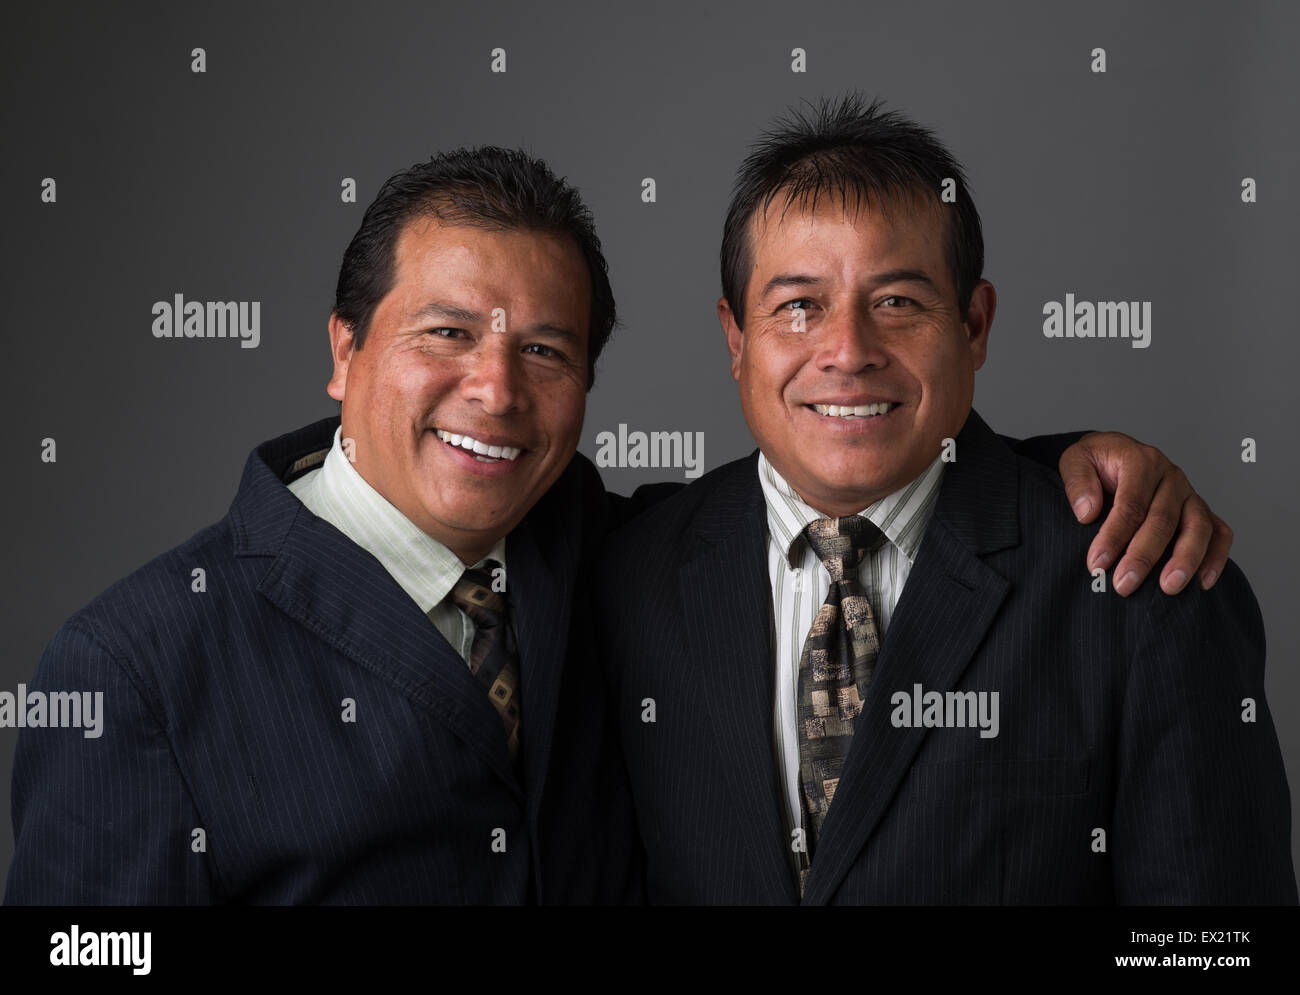 Hispanic Business hombres sonrientes en traje de negocios y corbatas posando para un retrato Foto de stock